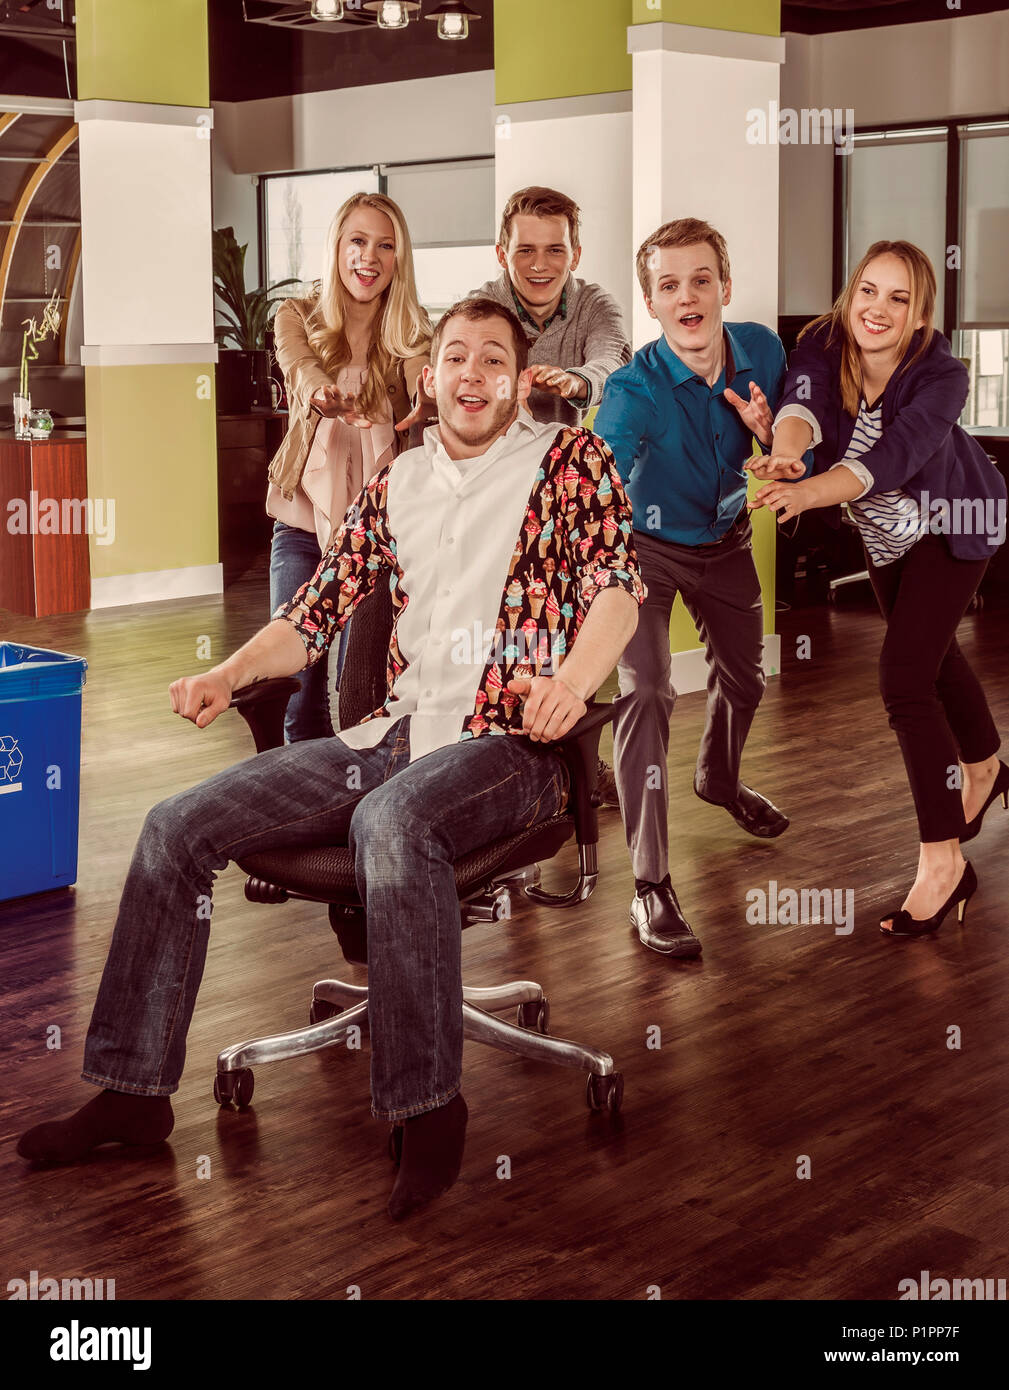 Gruppe Junger millennials Drücken ein Mitarbeiter über den Raum in seinem Stuhl; Sherwood Park, Alberta, Kanada Stockfoto